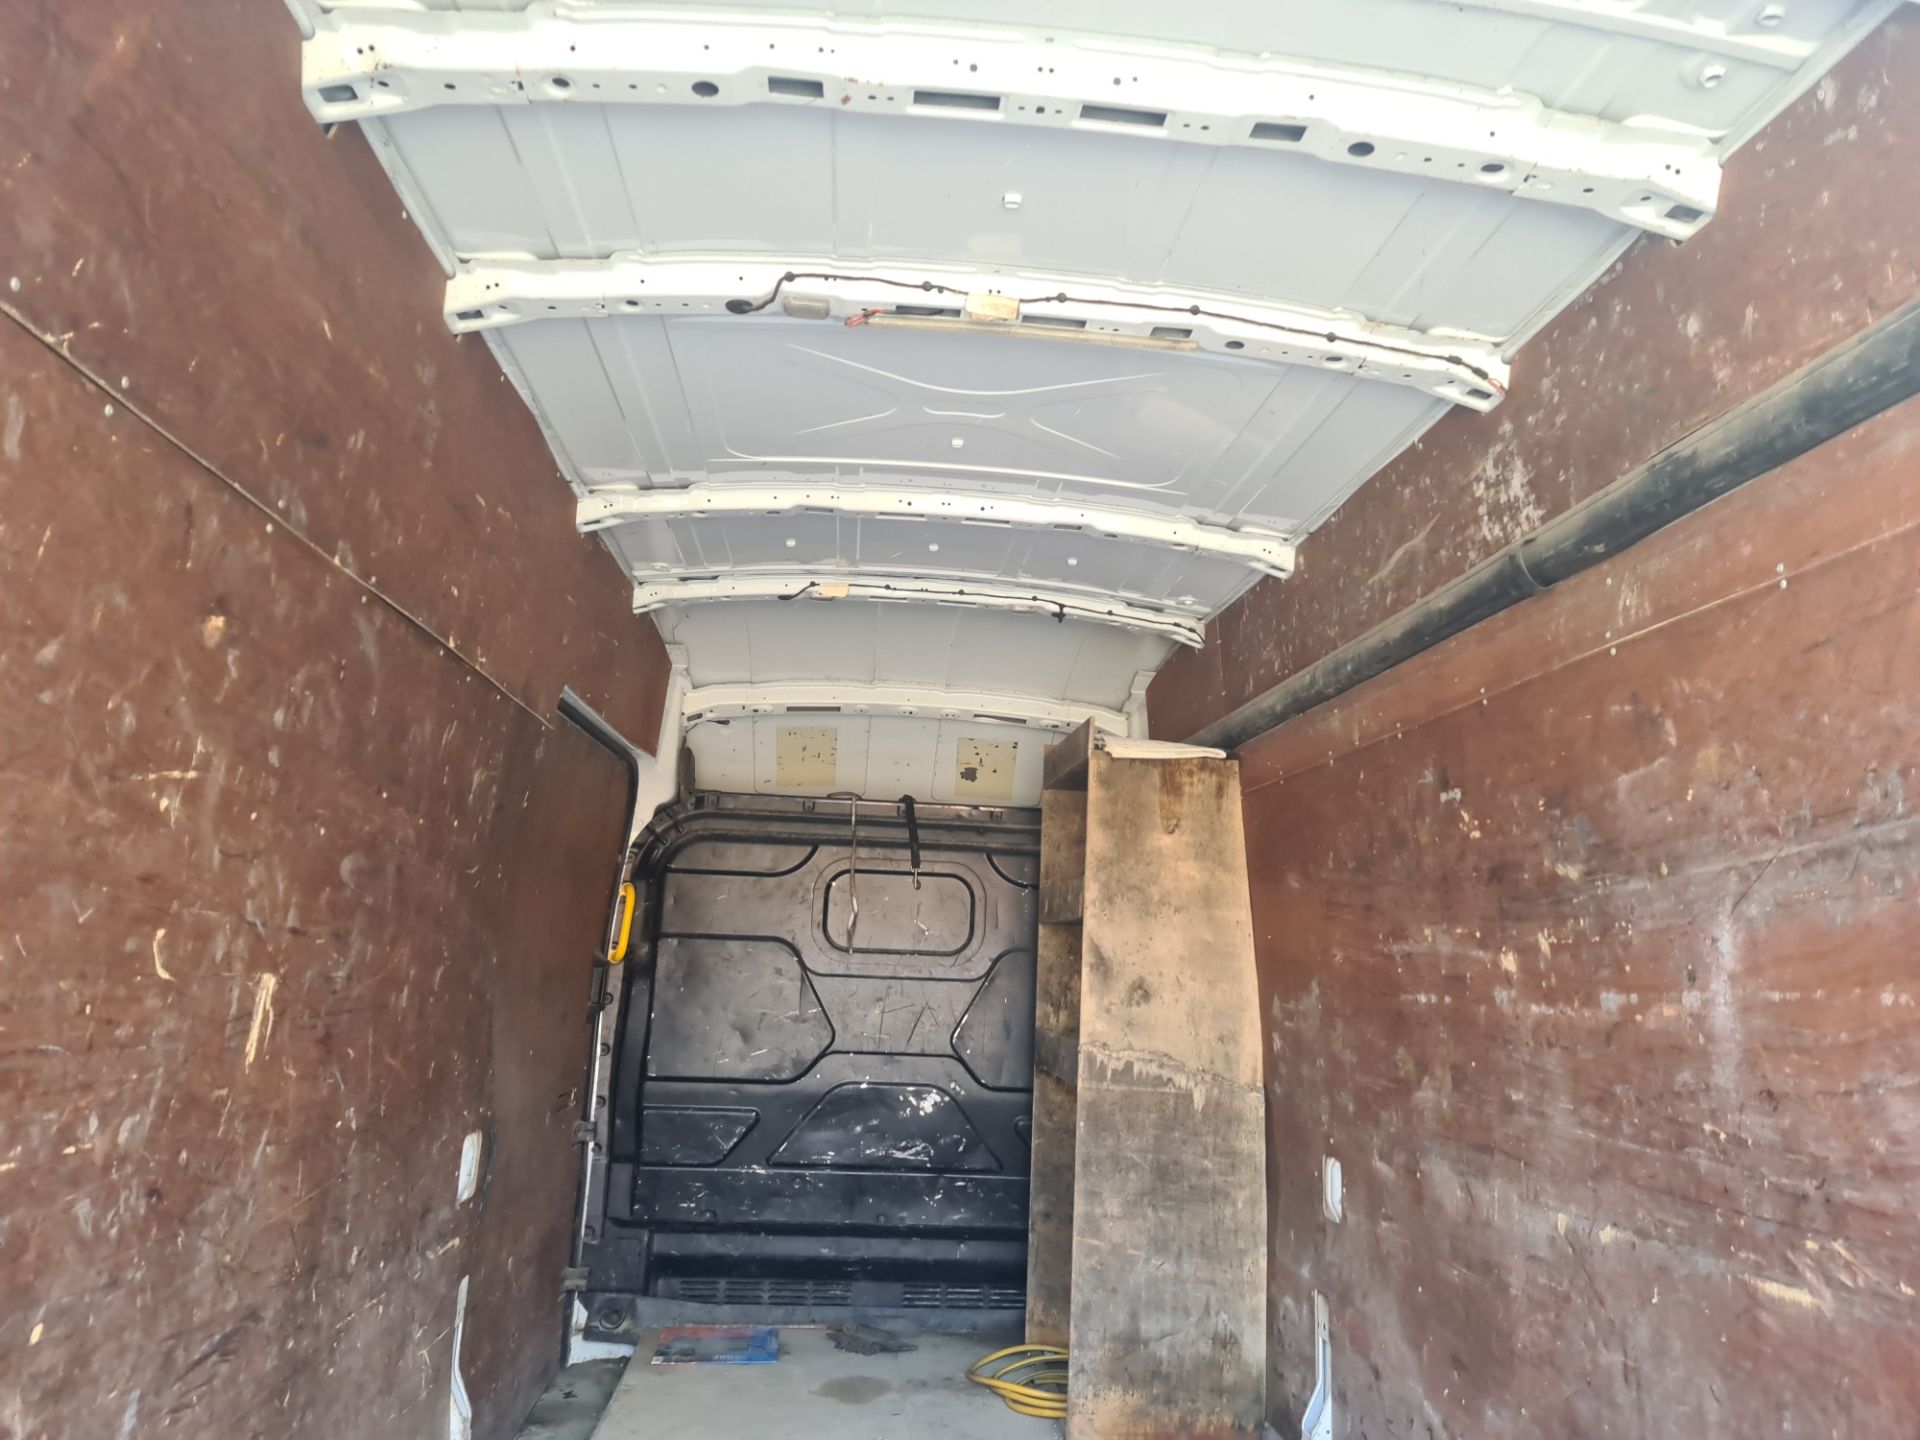 2018 Ford Transit 350 L4 H3 panel van - Image 47 of 61